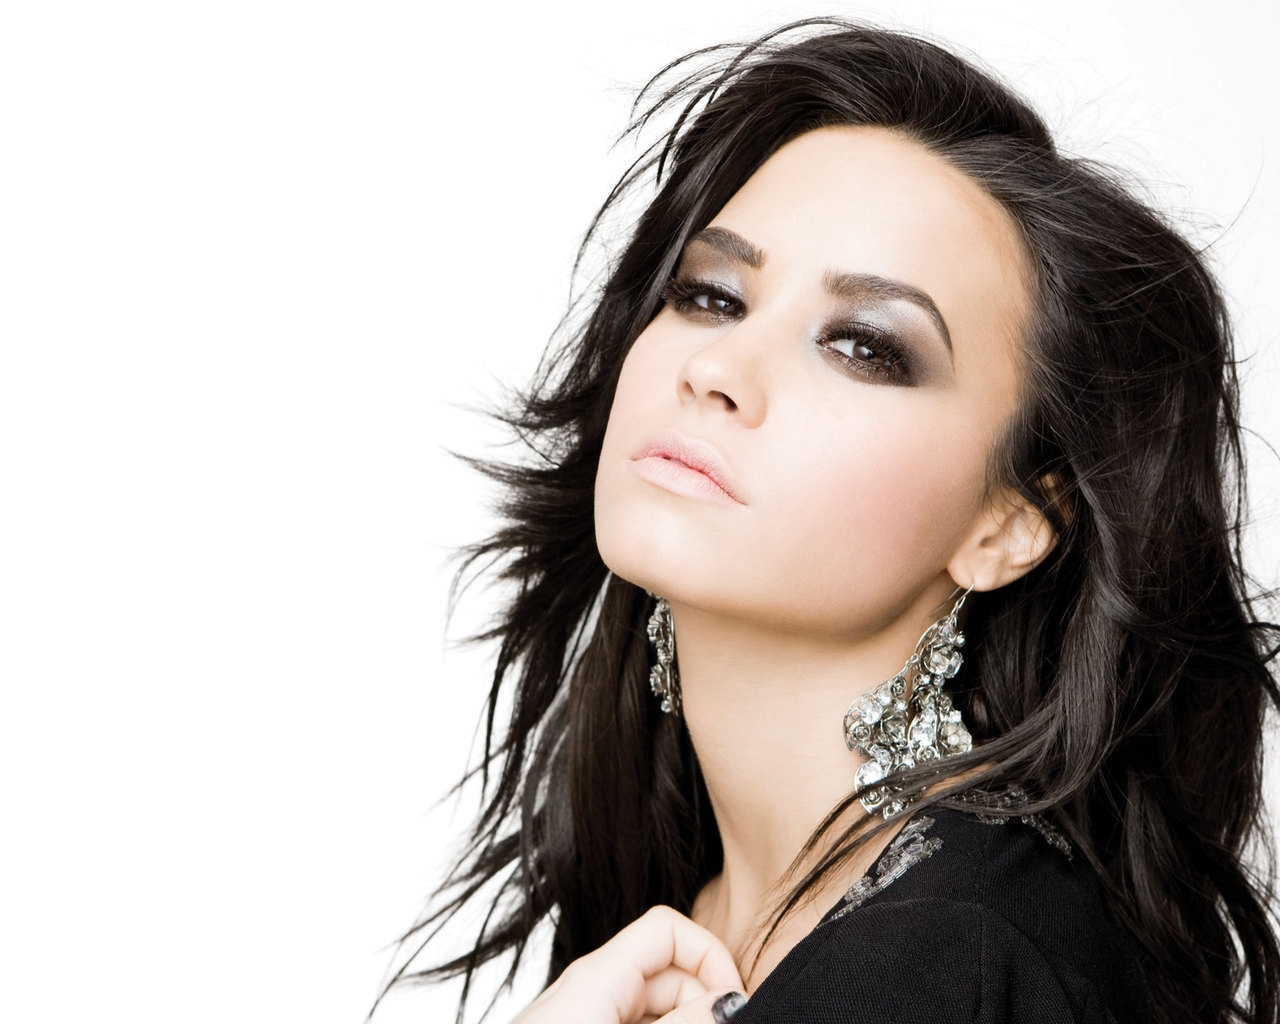 Demi Lovato Beautiful for 1280 x 1024 resolution